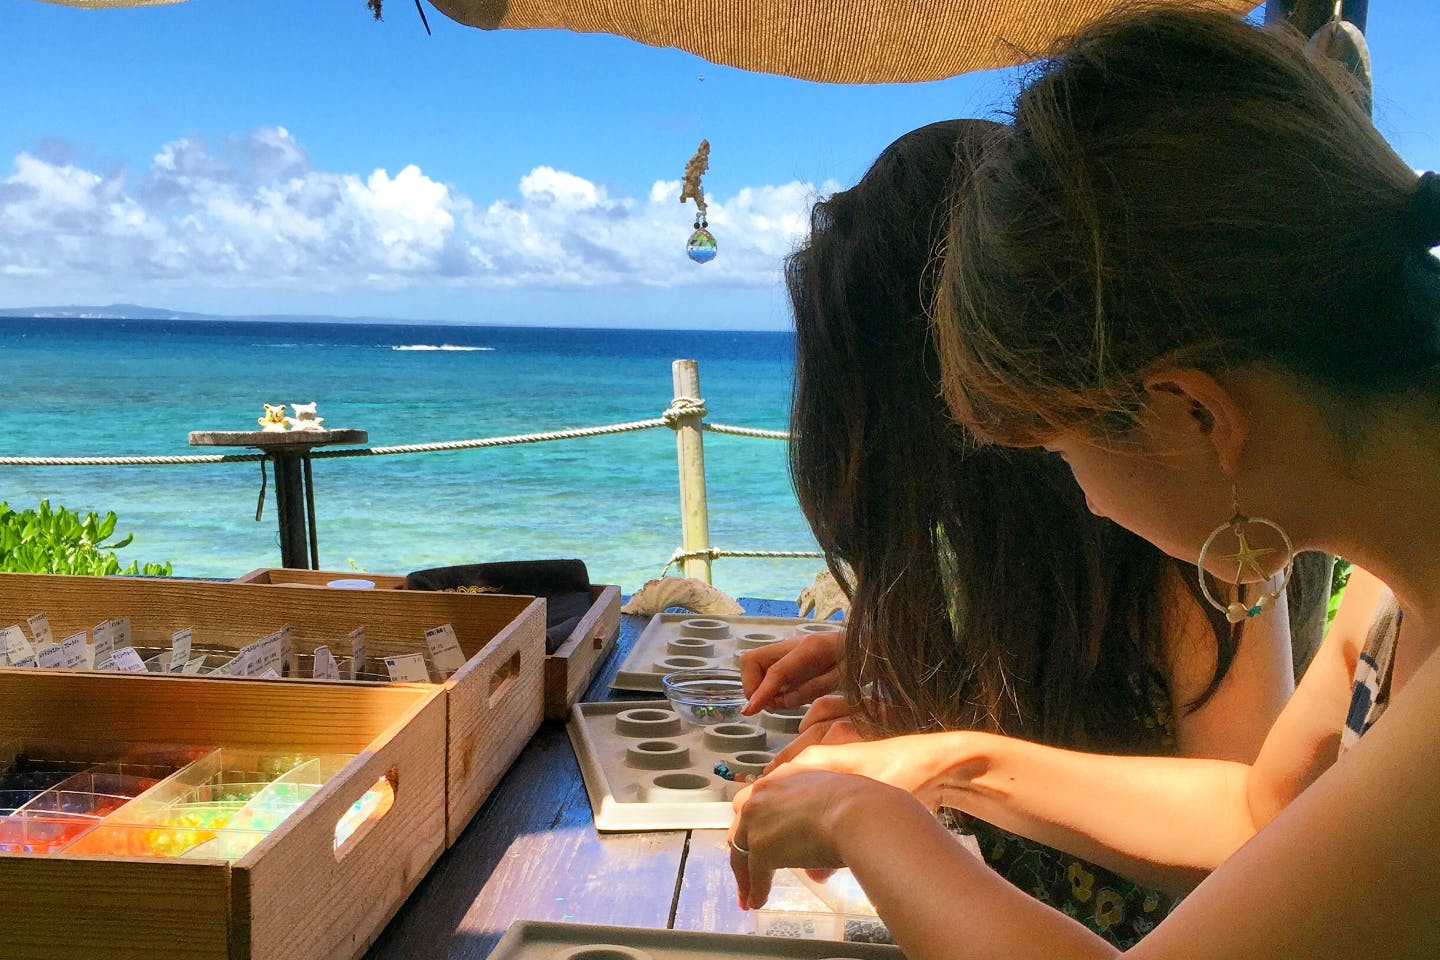 沖縄 アクセサリー作り体験 海の宝石 蛍石とパワーストーンでブレスレット作り アソビュー